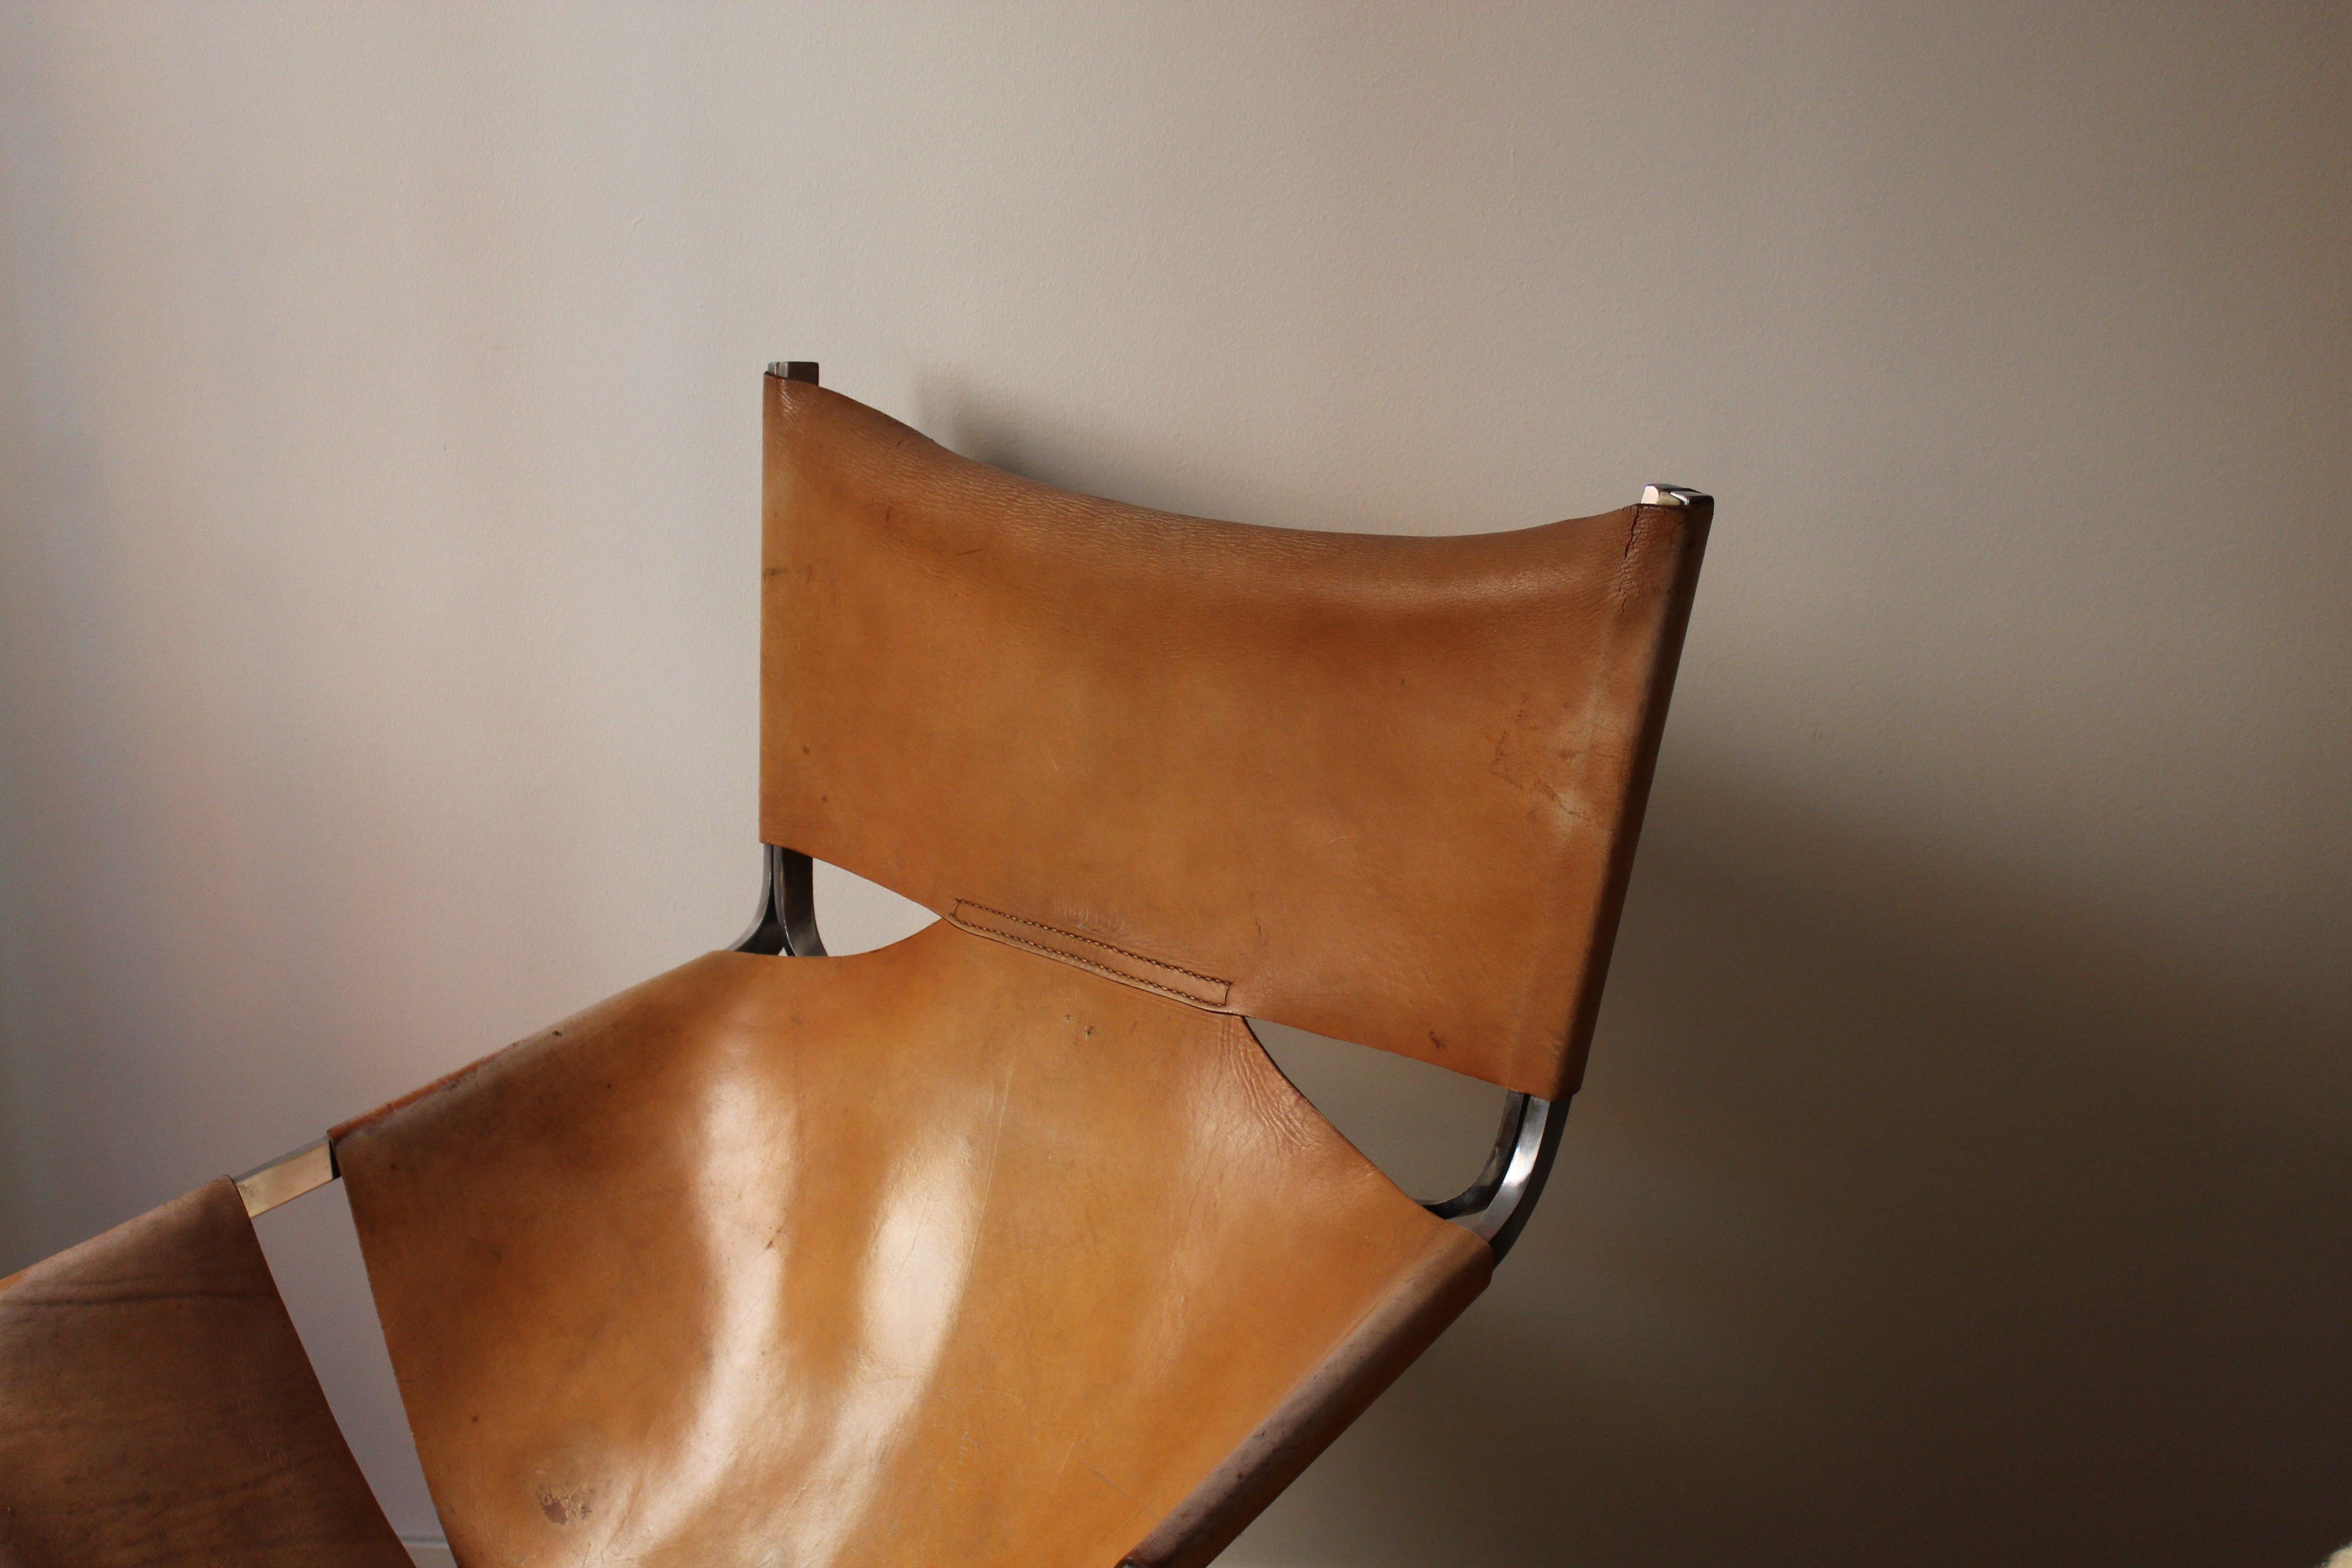 Chaise longue de Pierre Paulin pour Artifort. Conçue en 1963, produite dans les années 1960. Le cuir d'origine présente une patine spectaculaire.